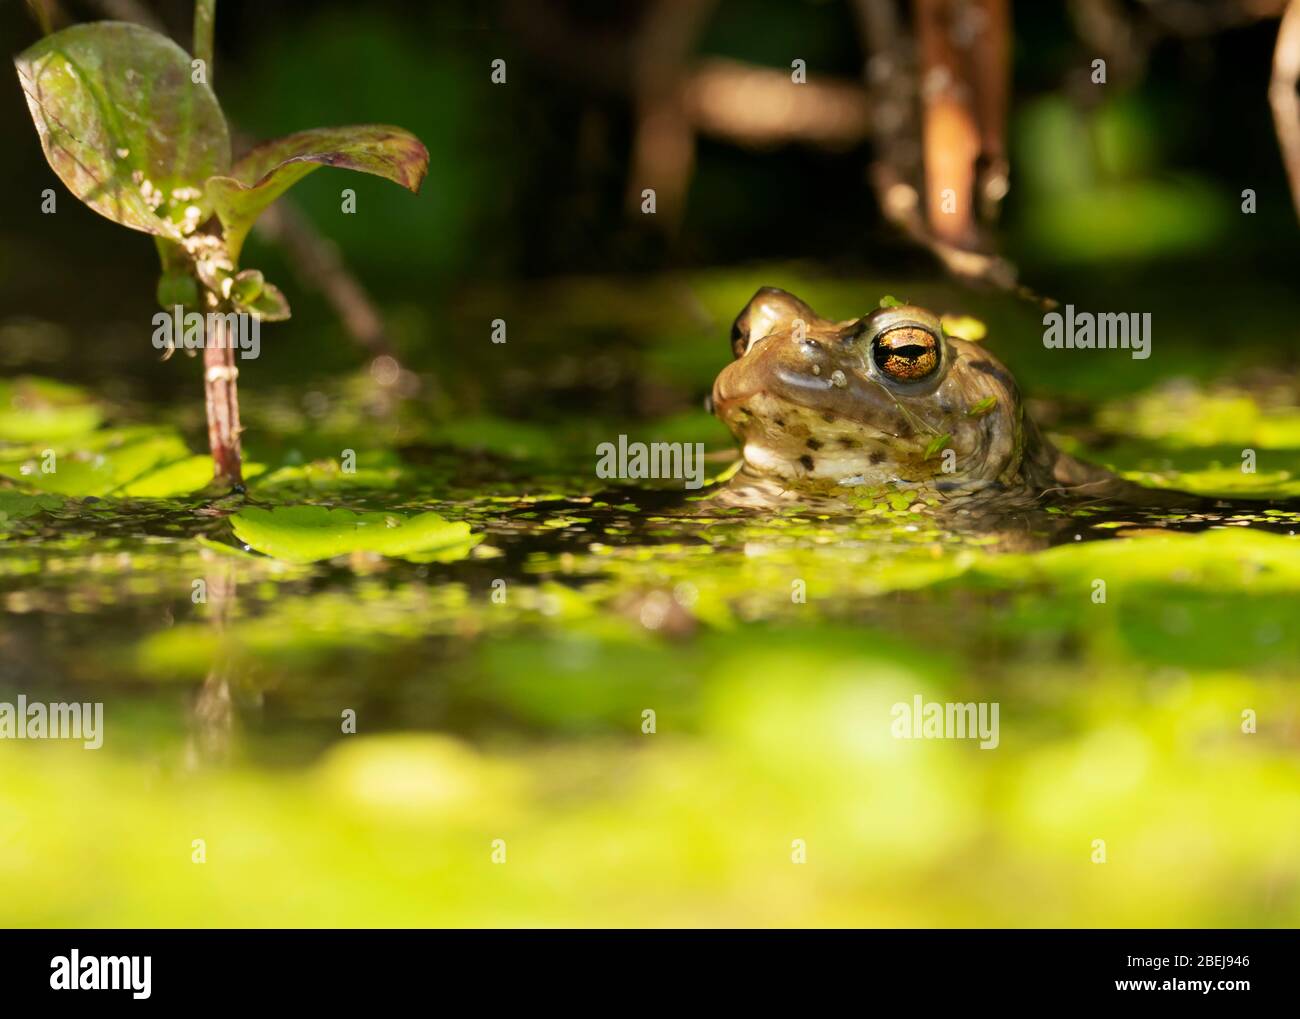 Une grenouille commune (Rana temporaria) se trouve à moitié submergée dans un étang du jardin du Warwickshire Banque D'Images